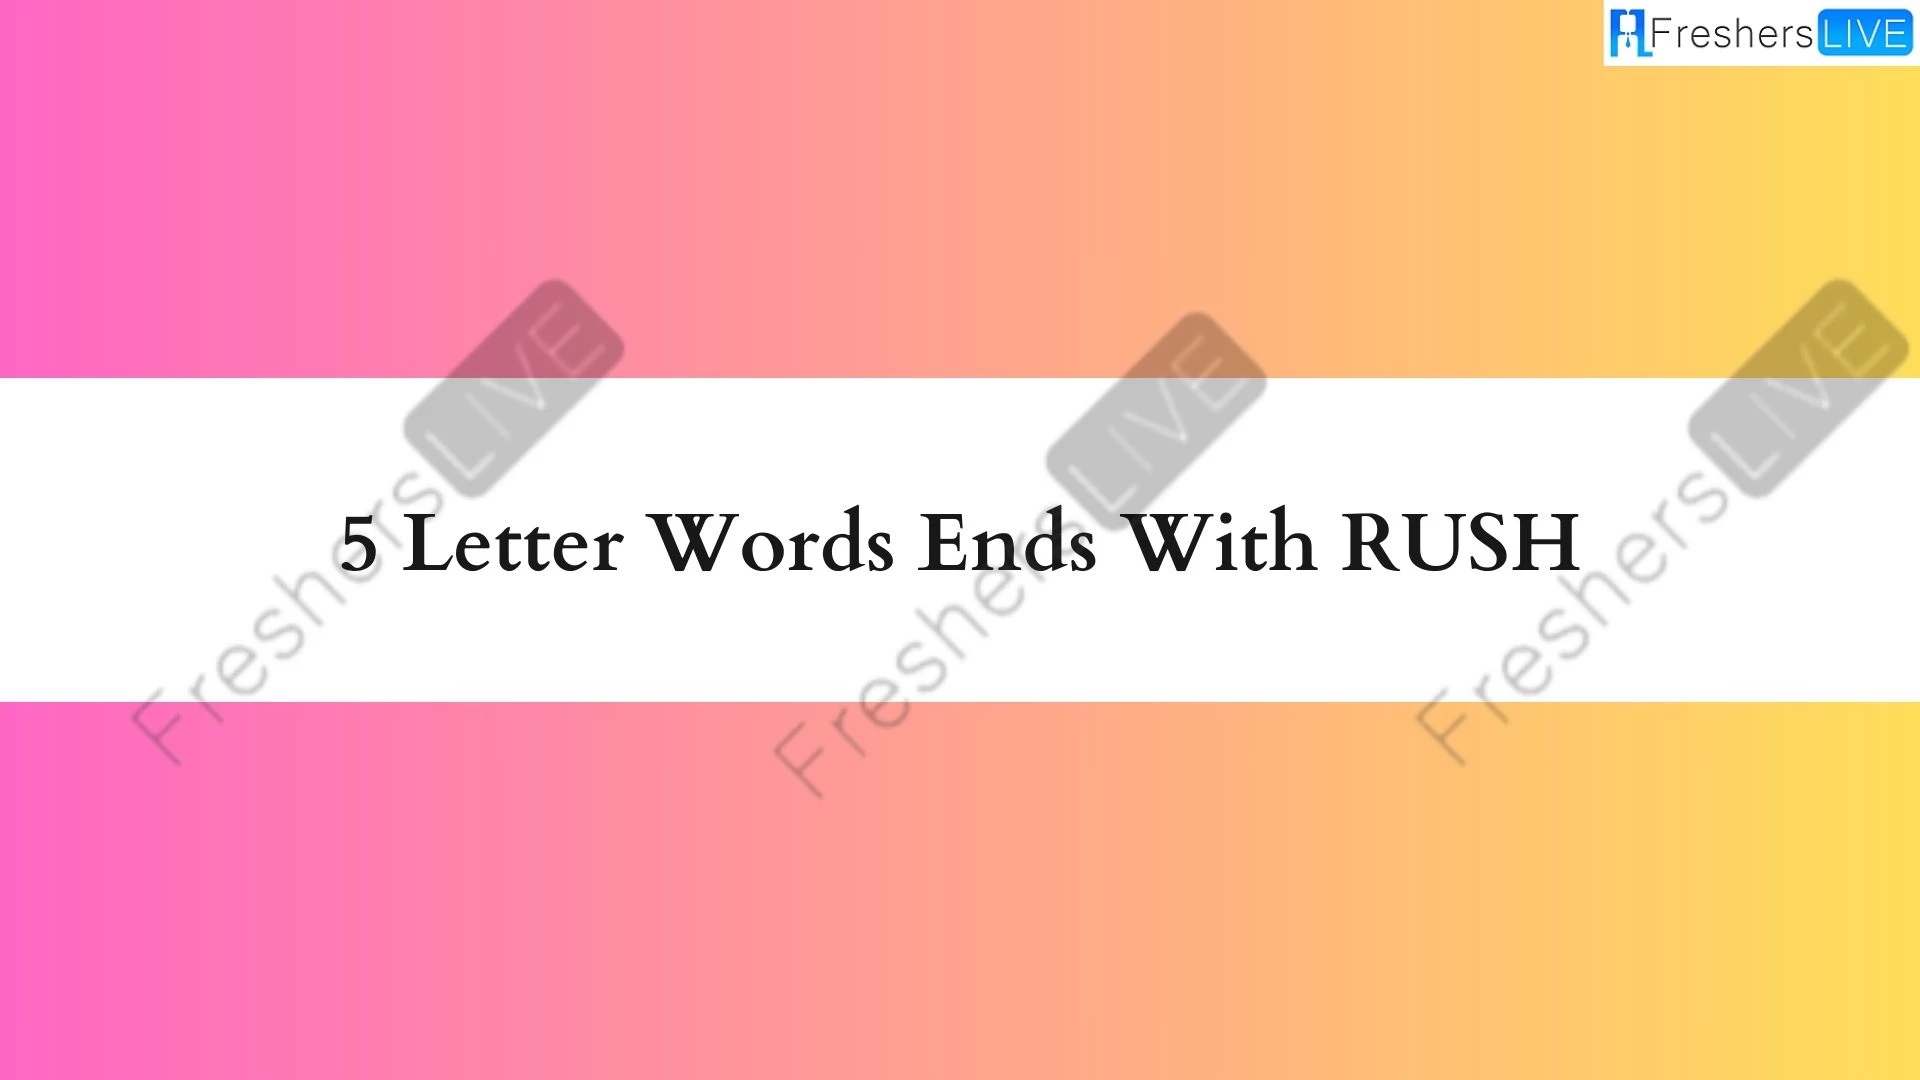 Palabras de 5 letras que terminen con RUSH, lista de palabras de 5 letras que terminen con RUSH